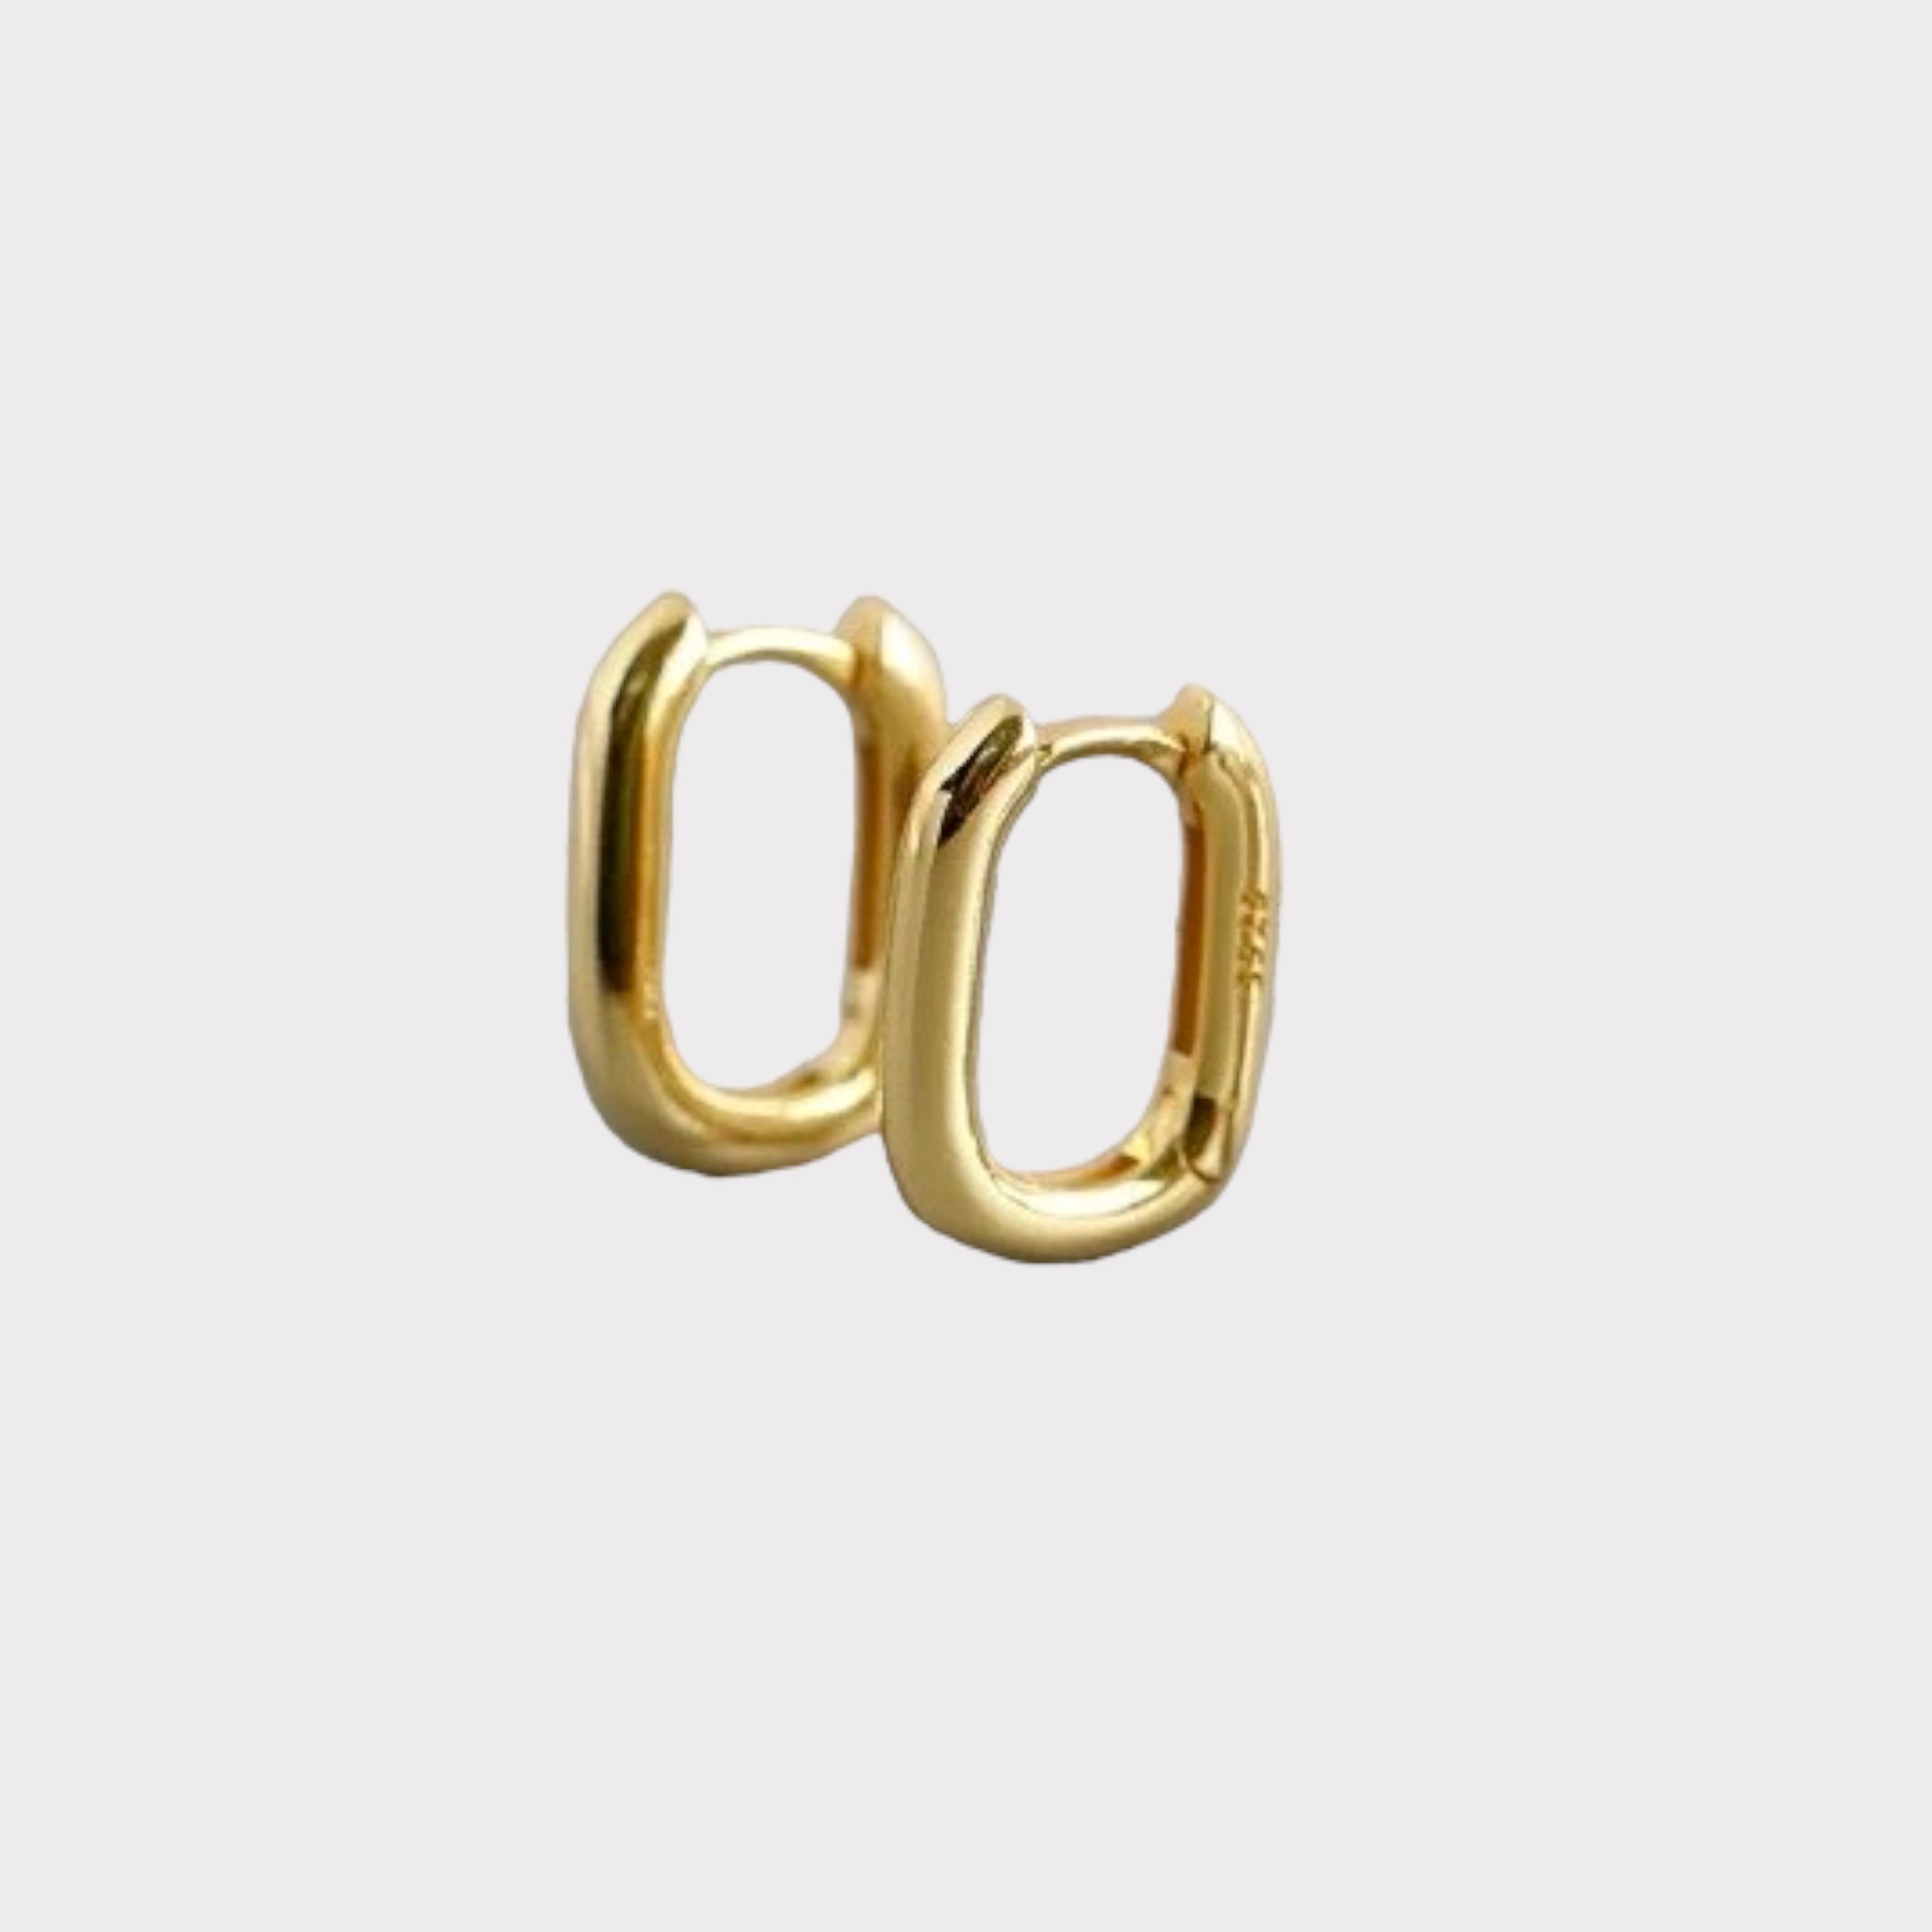 Ethos Oval Gold Earrings